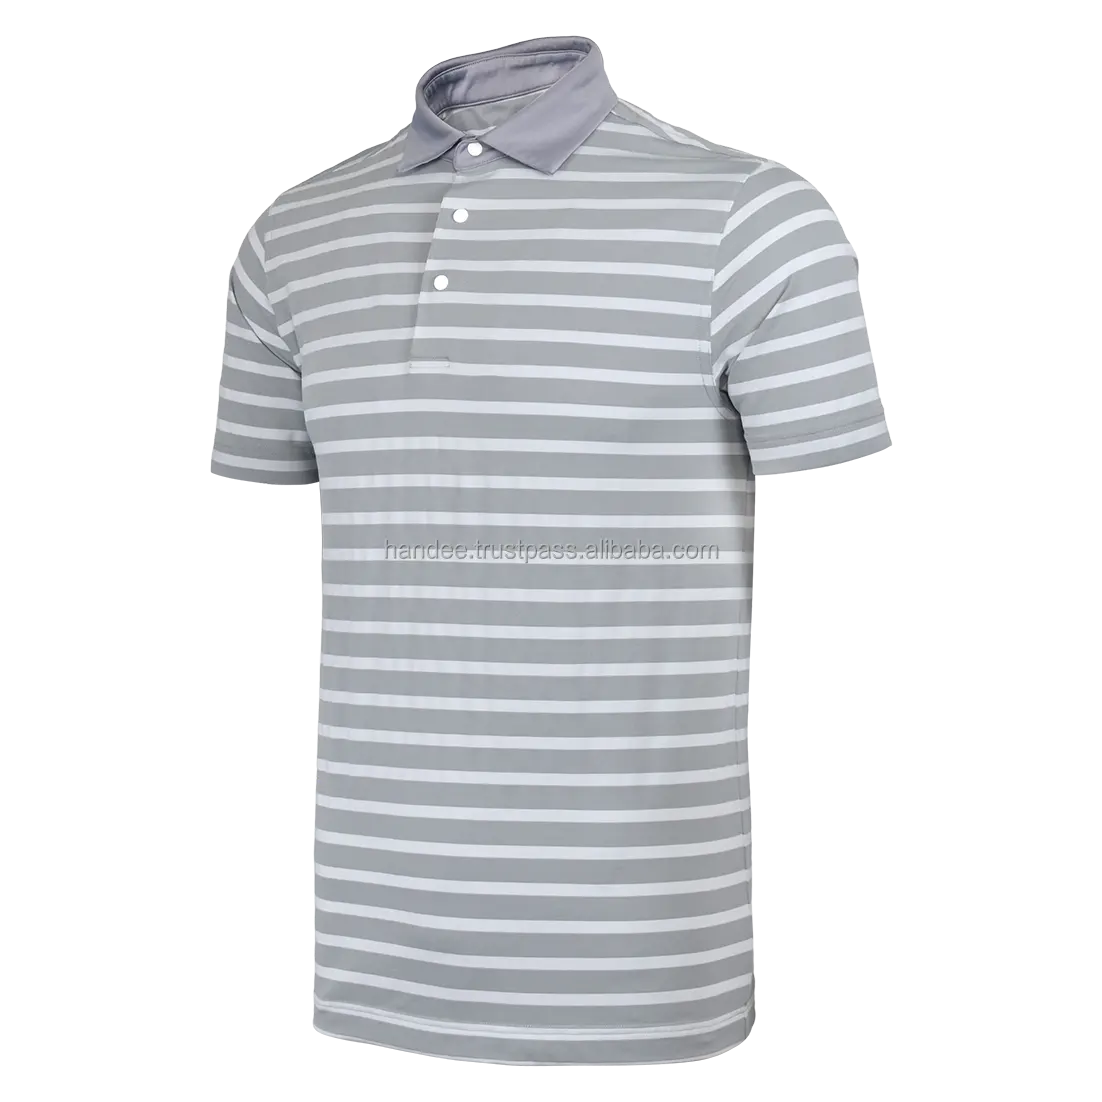 Striped T-Shirt Amazon